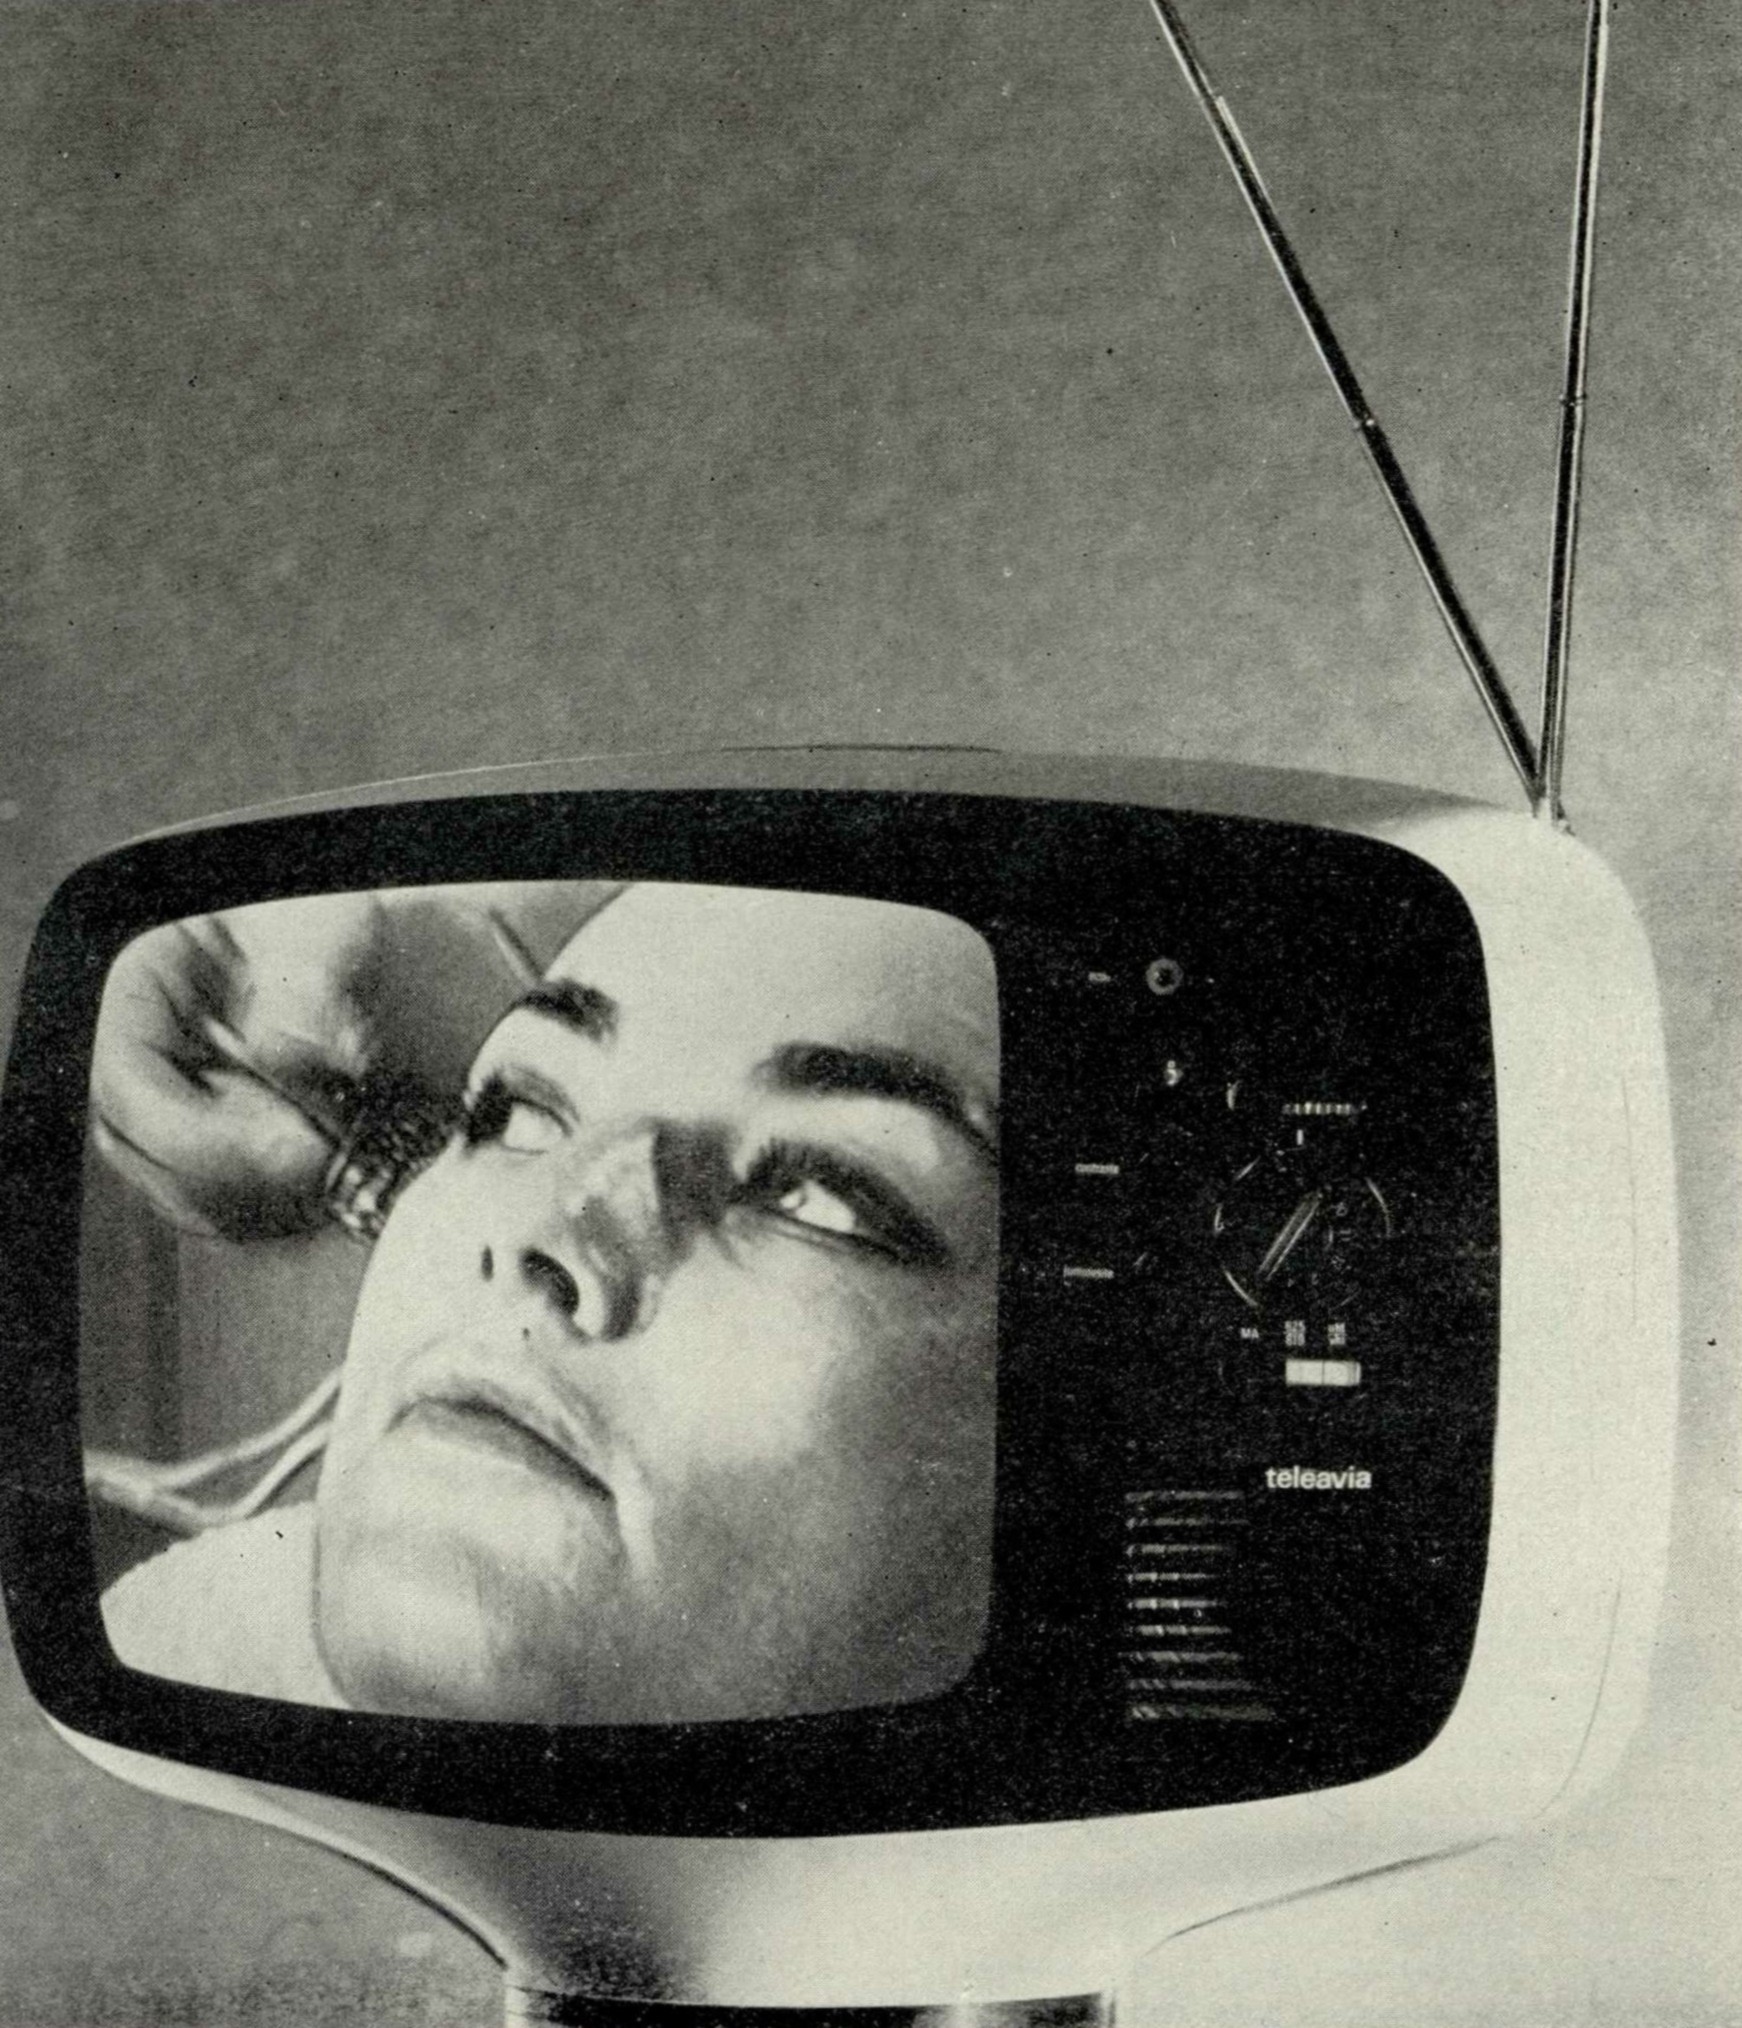 4. Переносный транзисторный телевизор Таллона во время работы. Светлый силуэт экрана четко вырисовывается на черной поверхности фильтра, делающего невидимой катодную трубку кинескопа.